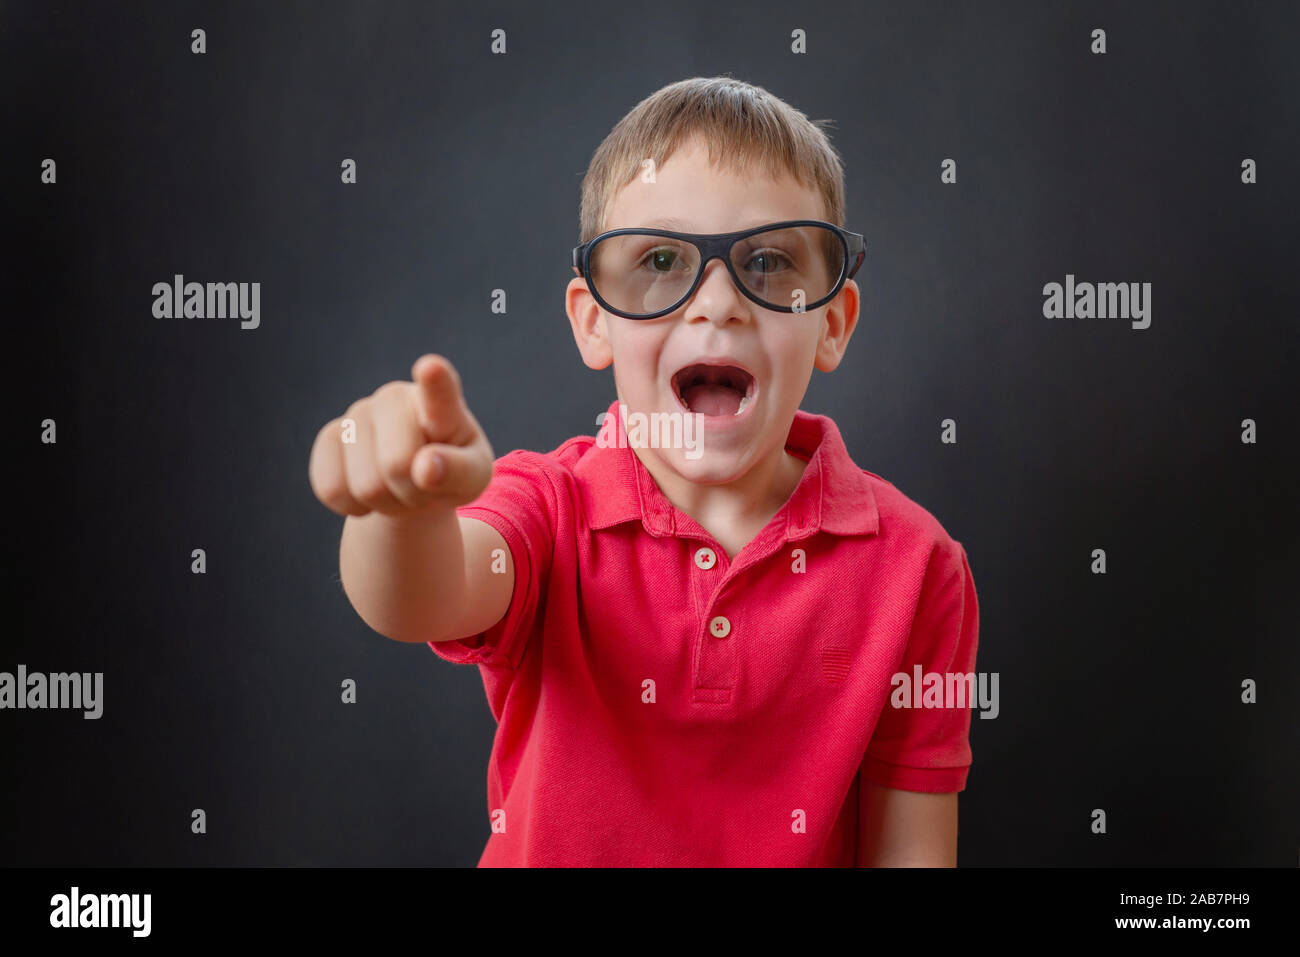 Il ragazzo ride e punta il dito in un momento divertente nel filmato. Indossa gli occhiali 3d sulla sua testa. Sfondo nero. Foto Stock